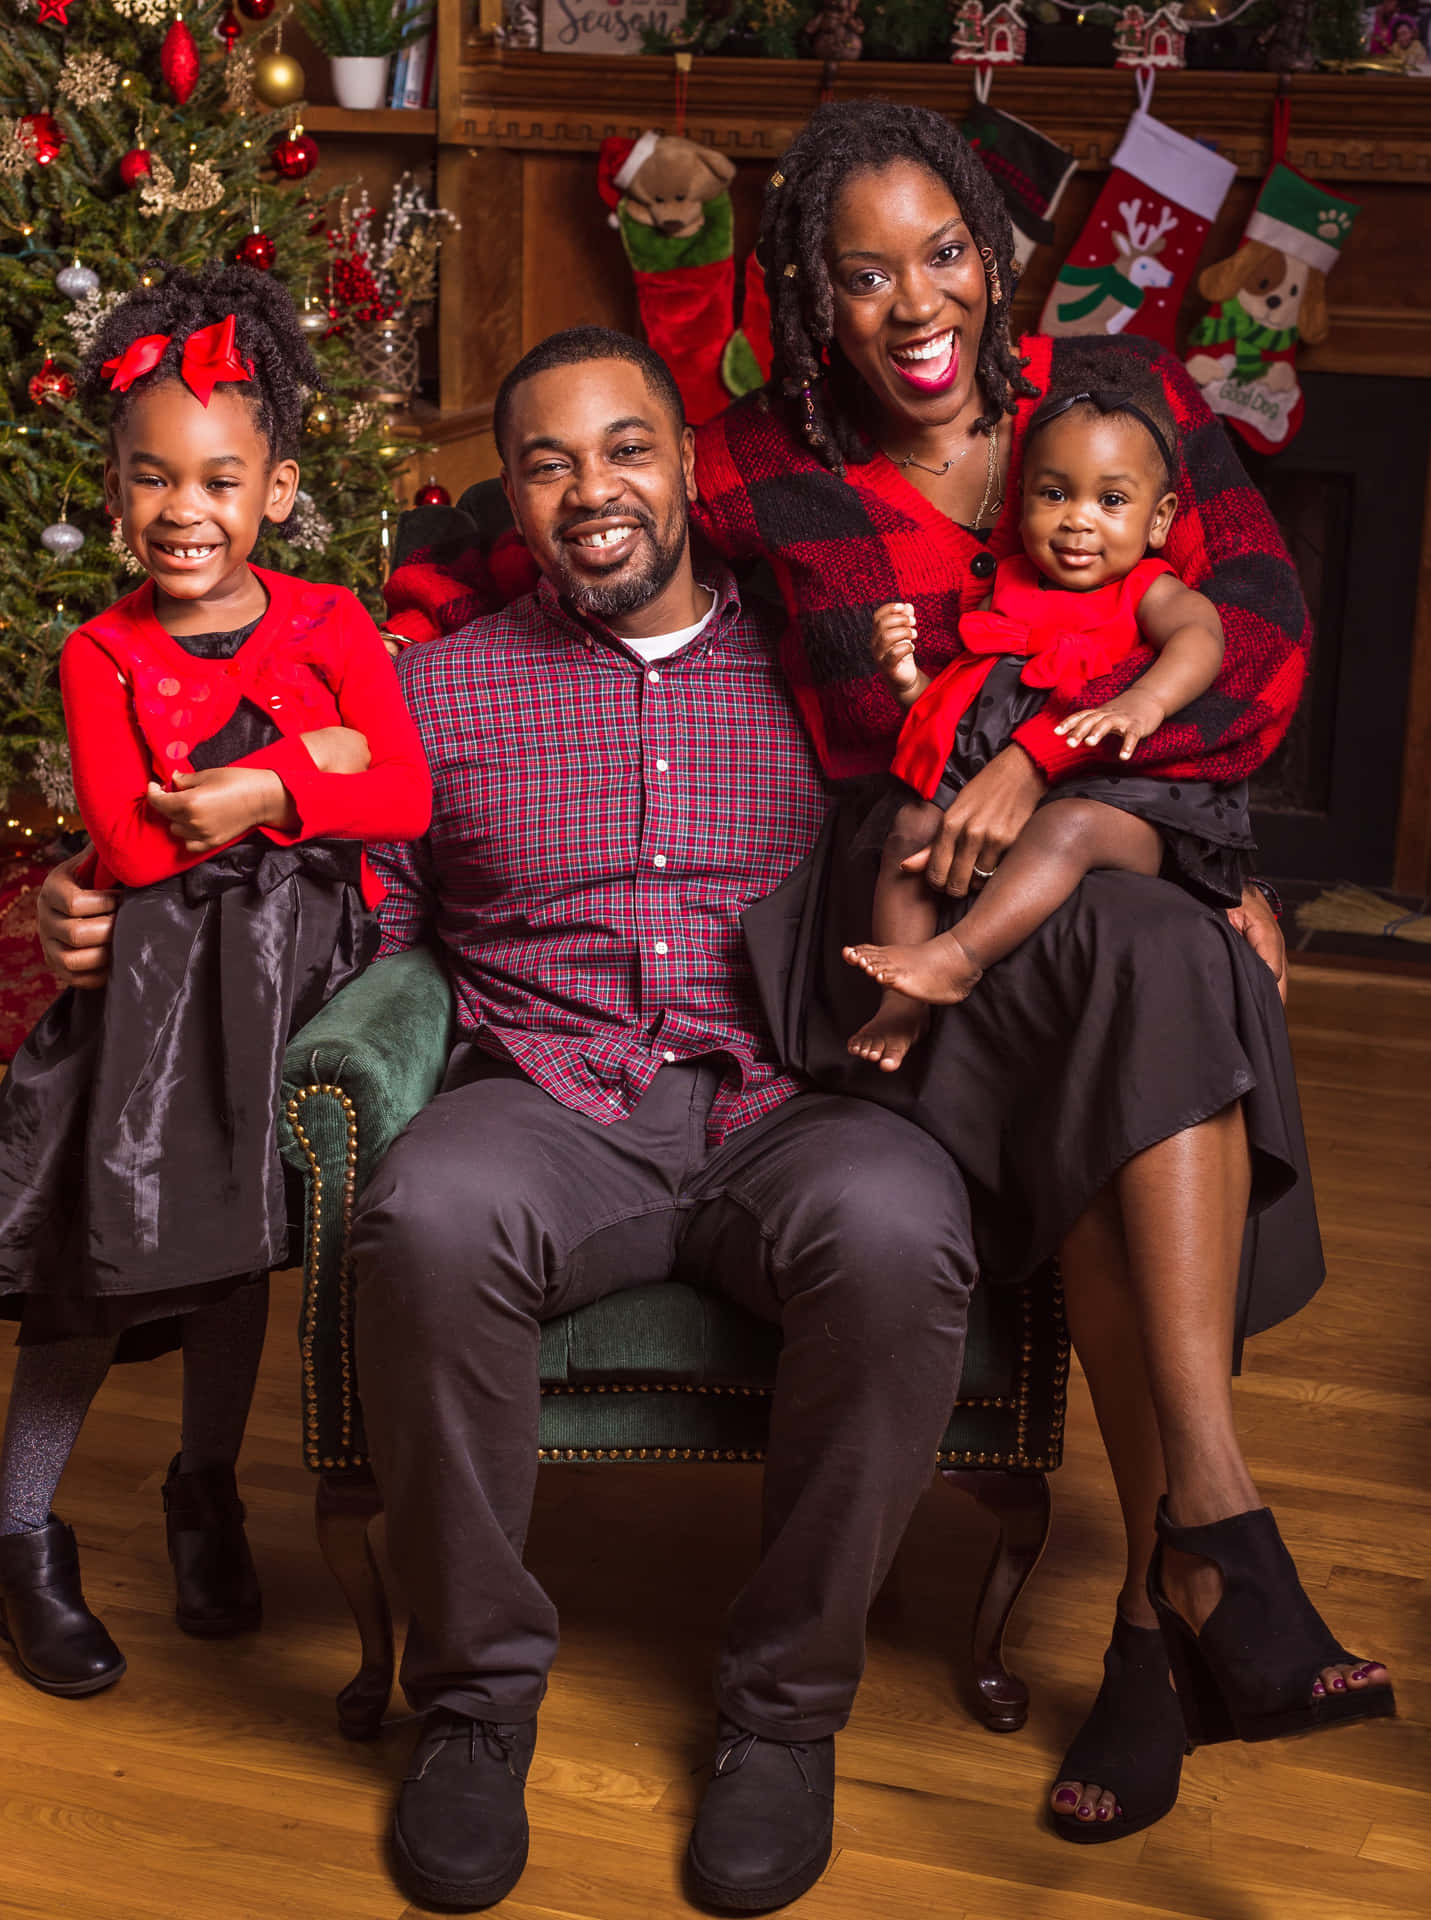 Imagende Retrato De La Familia Negra Frente Al Árbol De Navidad